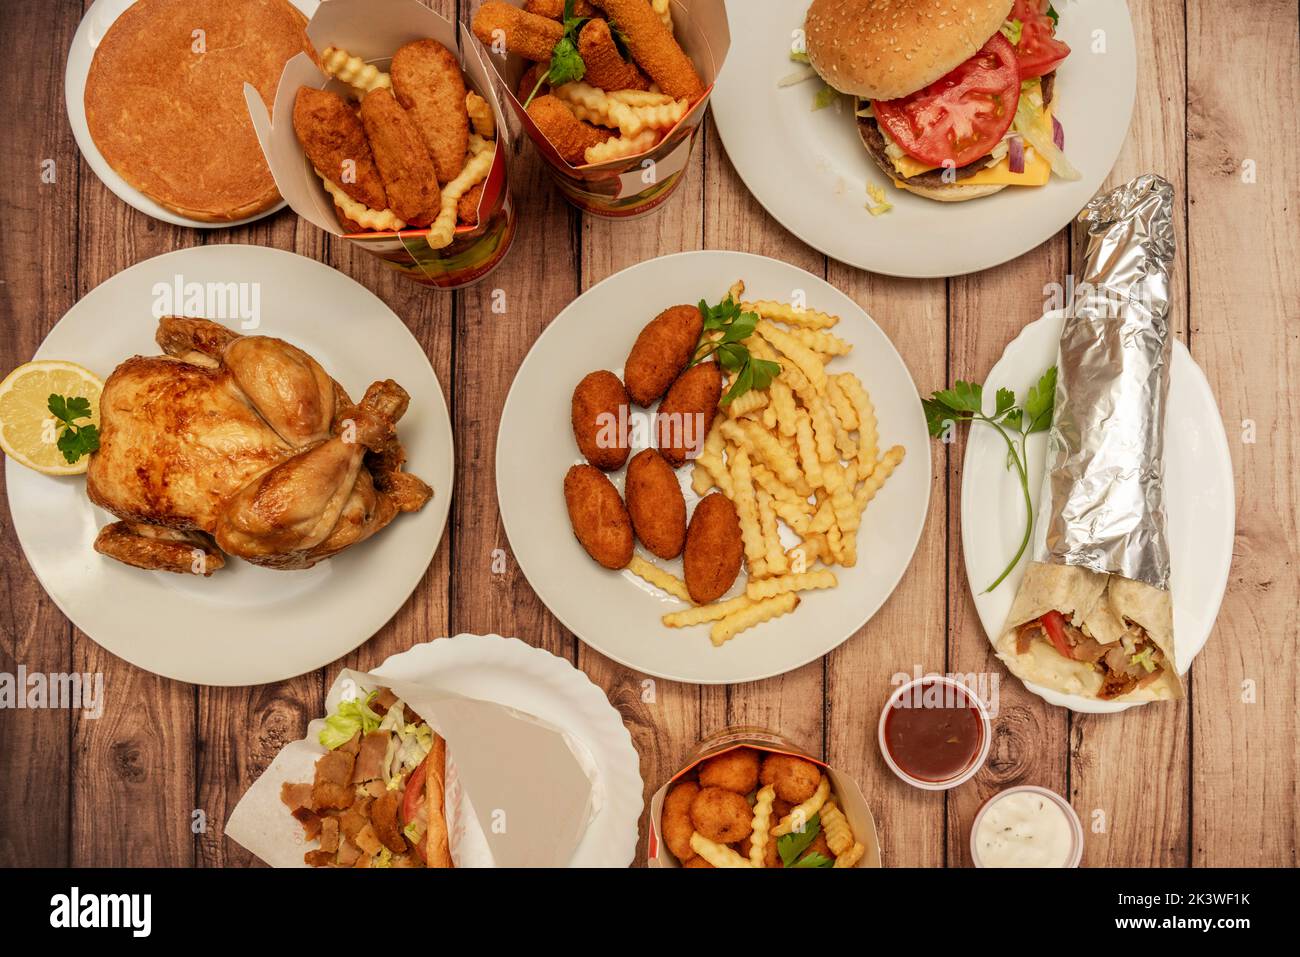 Divers plats de restauration rapide avec croquettes, poulet grillé, boîtes avec pommes de terre et lanières de poulet frites, sandwich au kebab d'agneau et blé dur avec viande halal Banque D'Images